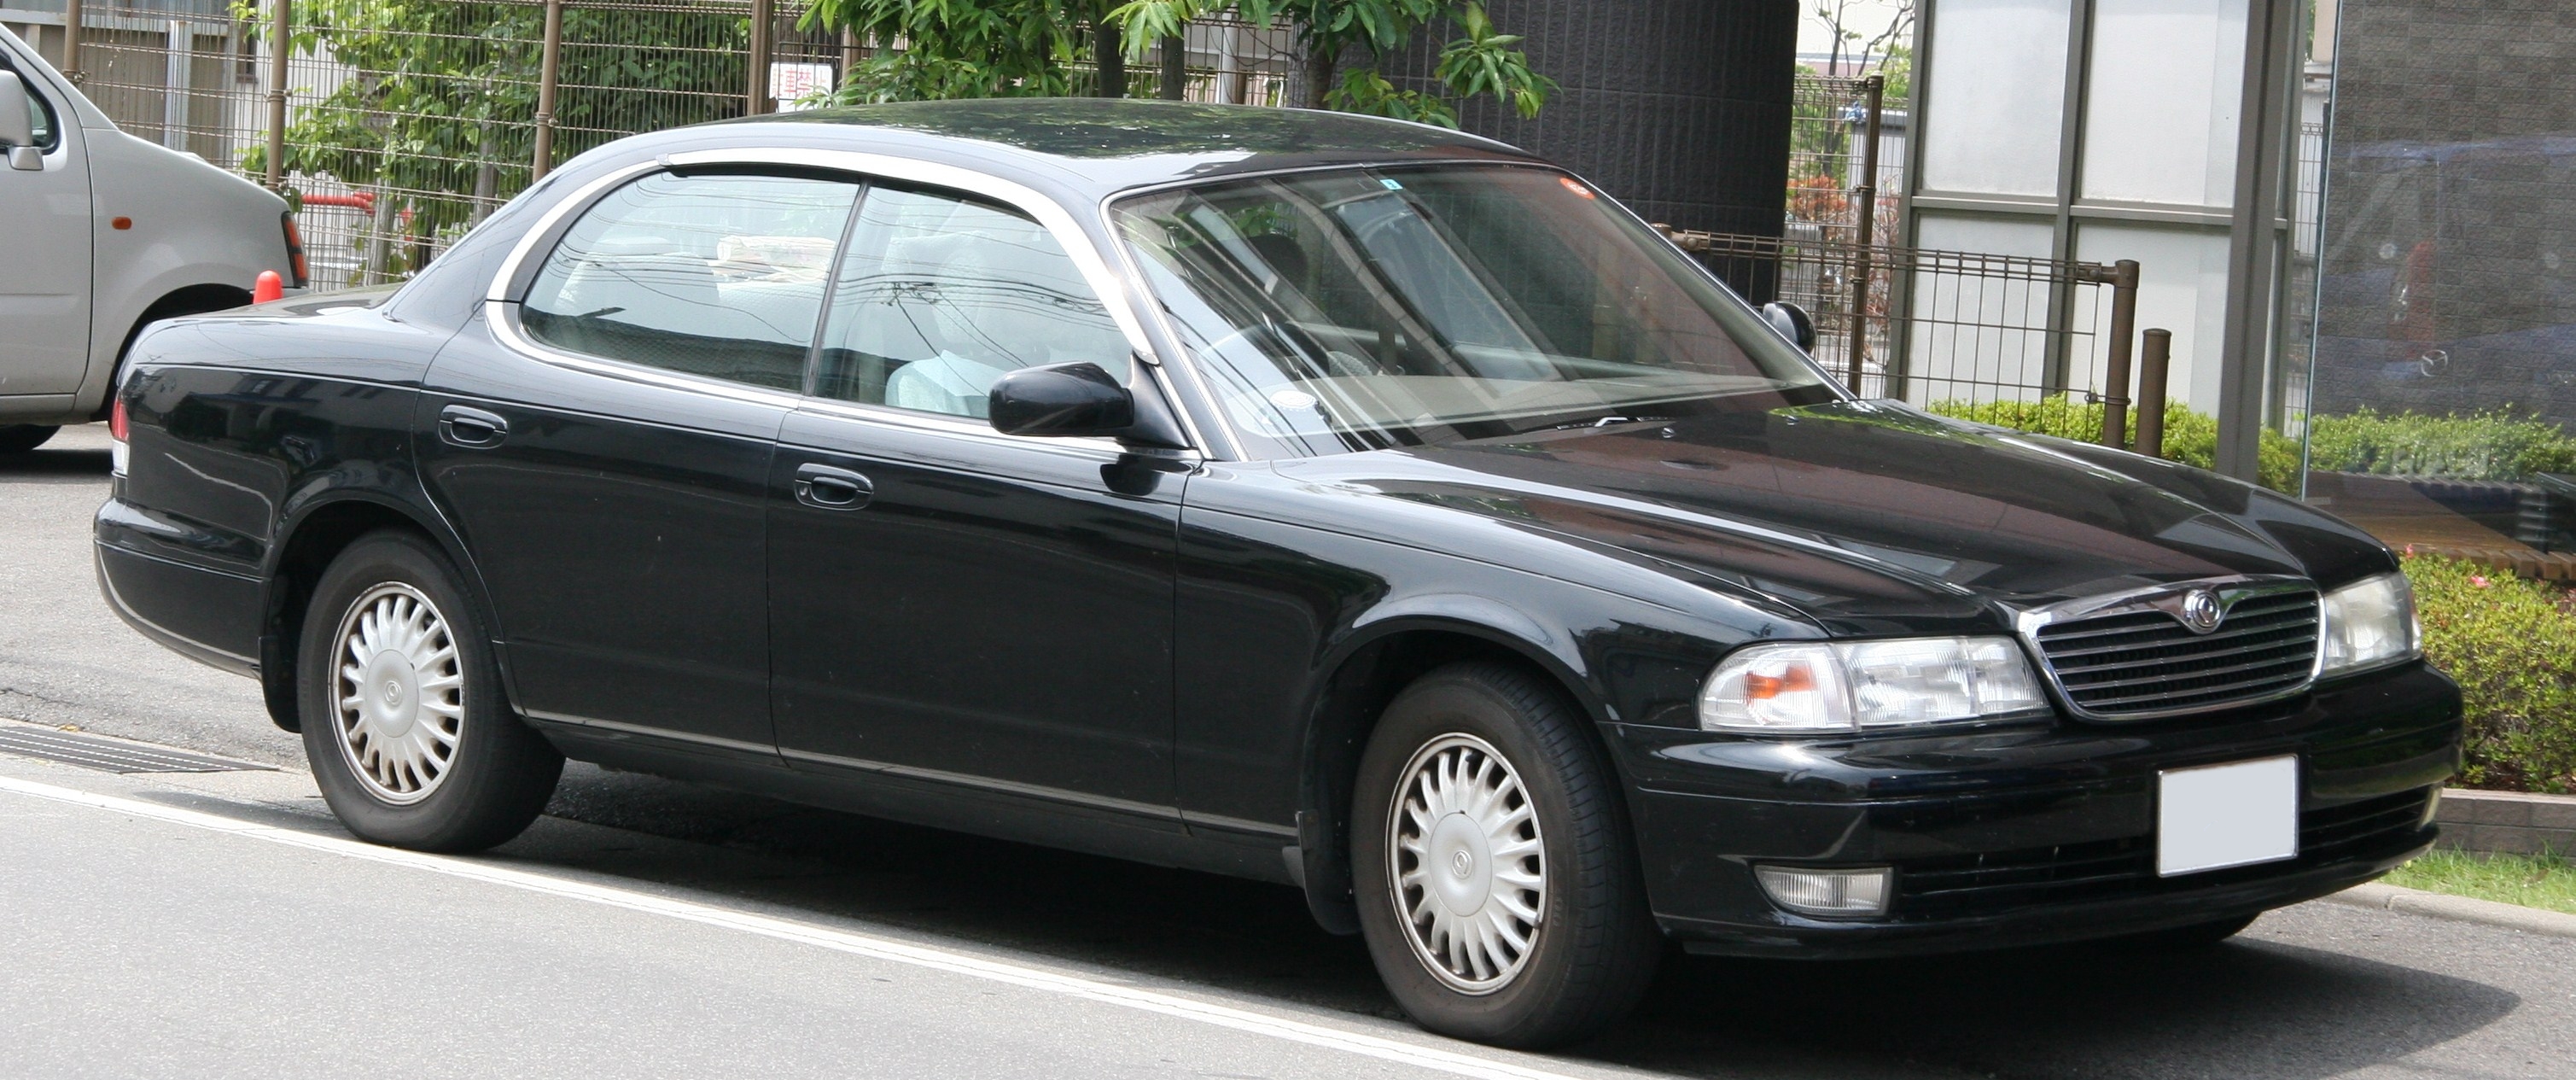 File:1995-1997 Mazda Sentia.jpg